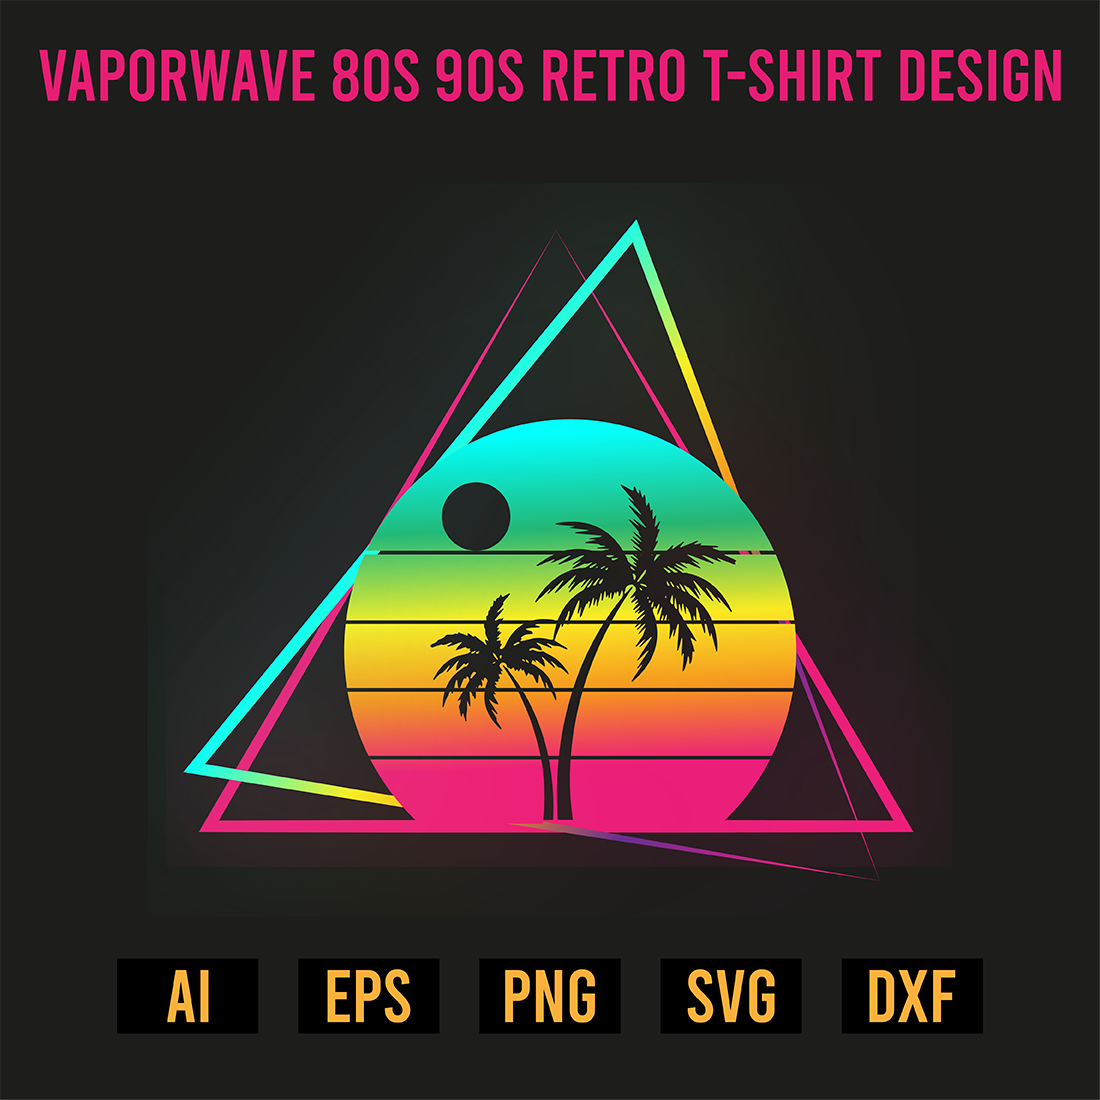 Vaporwave 80s 90s Retro T-Shirt Design preview image.